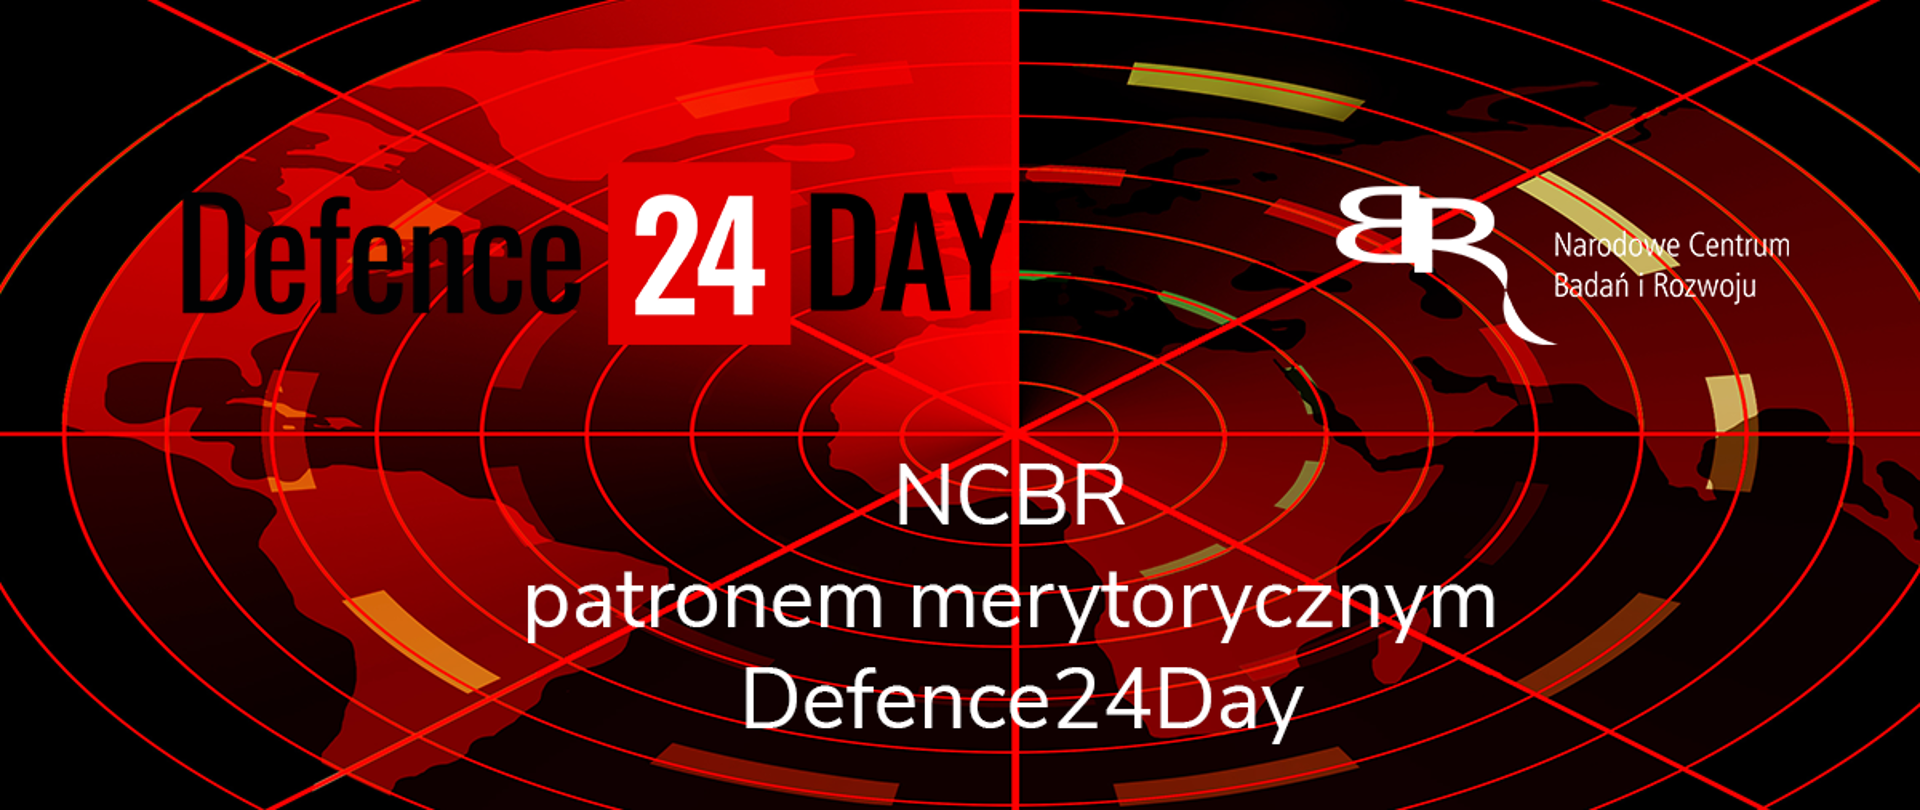 NCBR patronem merytorycznym Defence24Day